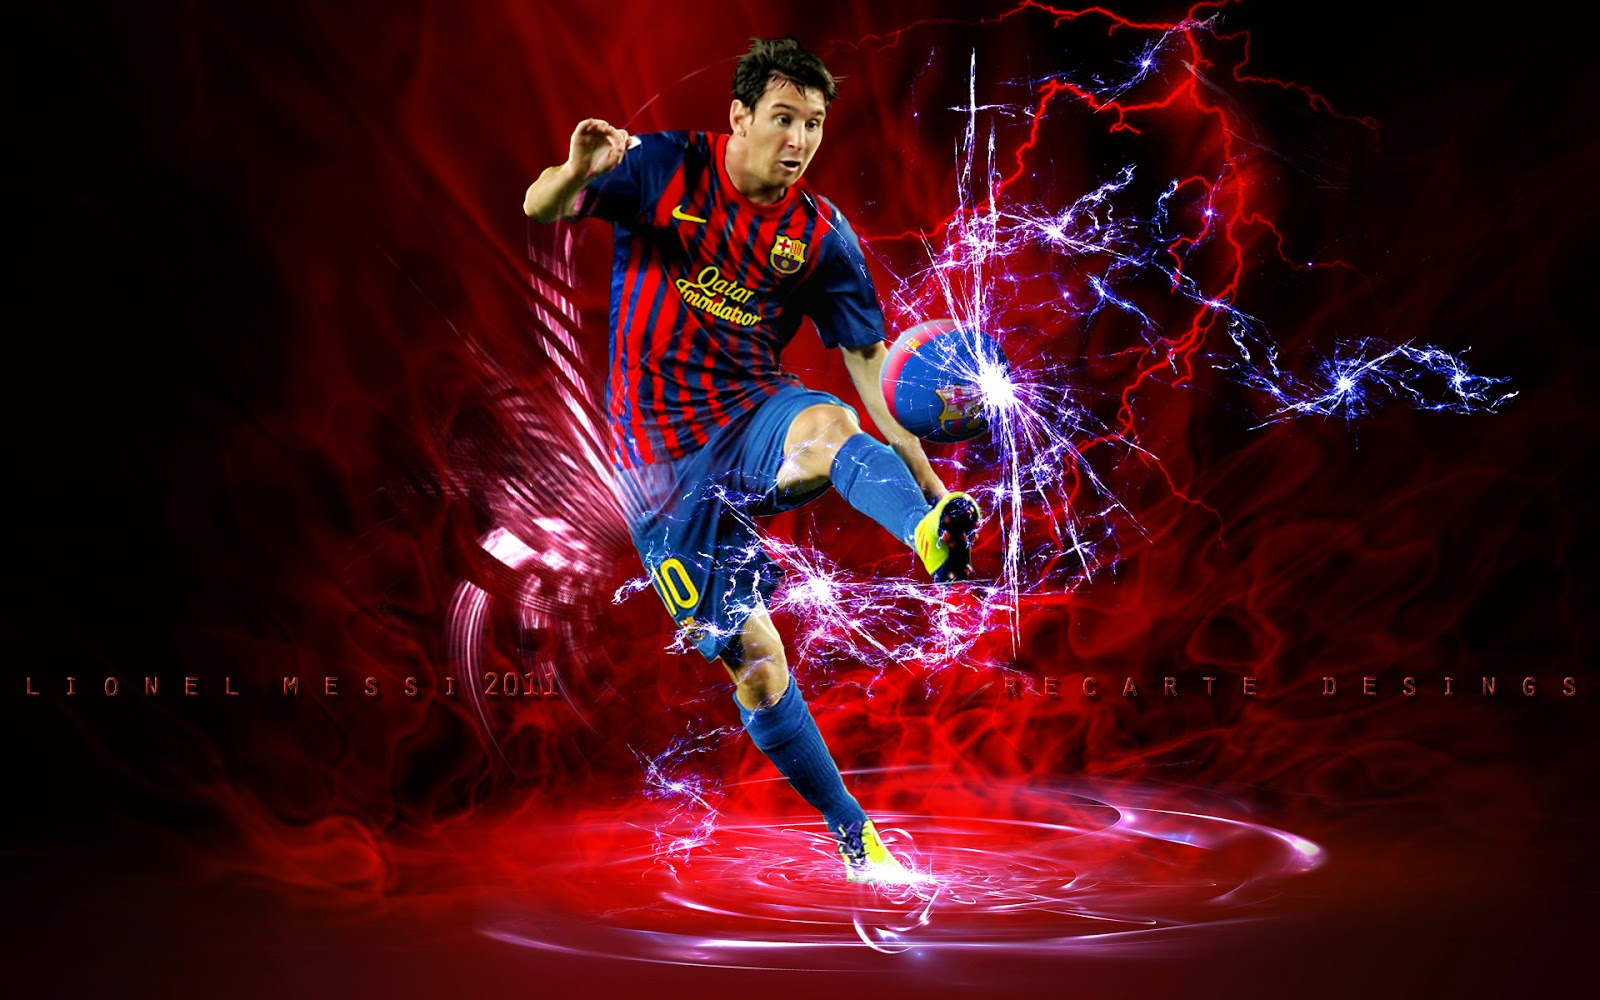 Bộ Sưu Tập Hình Ảnh Messi Cực Chất Full 4K Với Hơn 999 Hình Ảnh